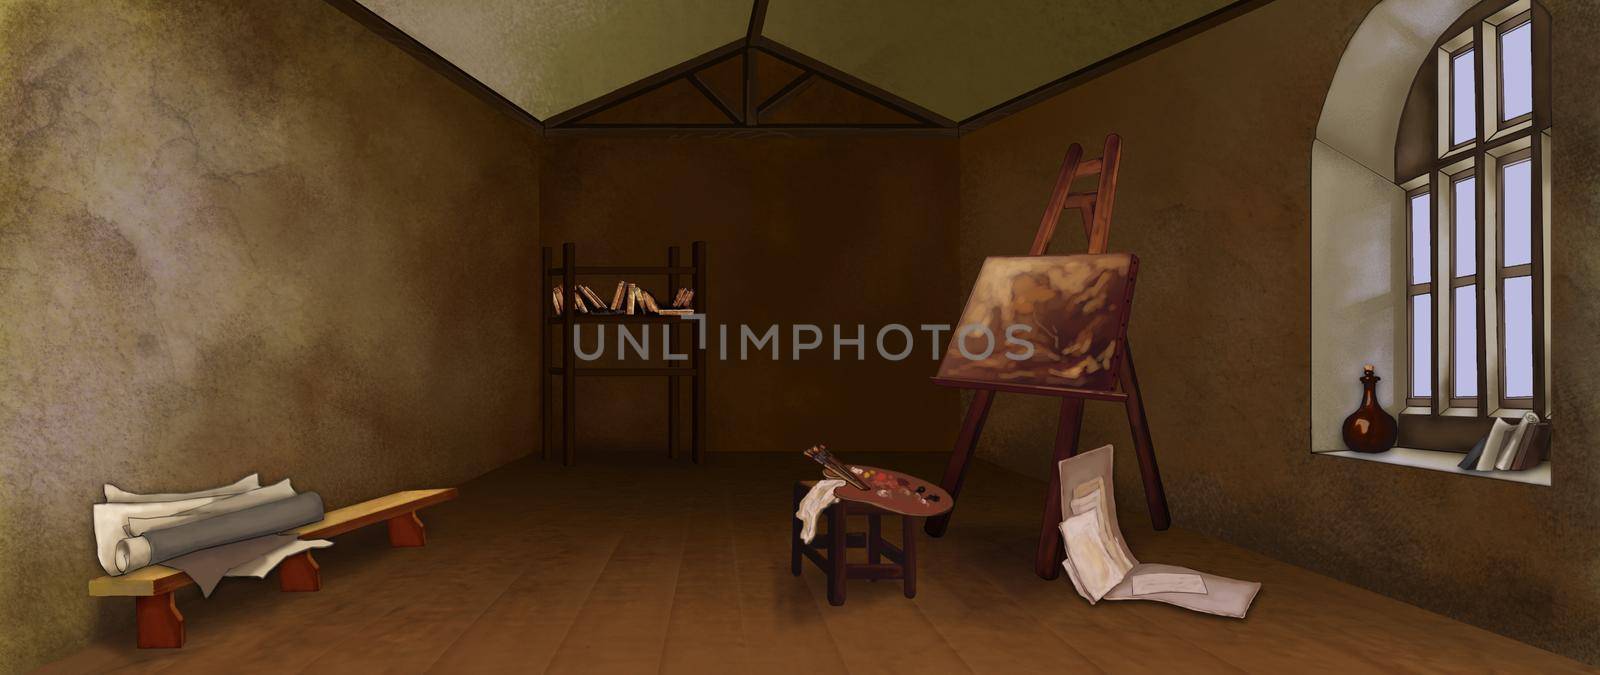 Workshop of a poor renaissance artist. Digital Painting Background, Illustration.